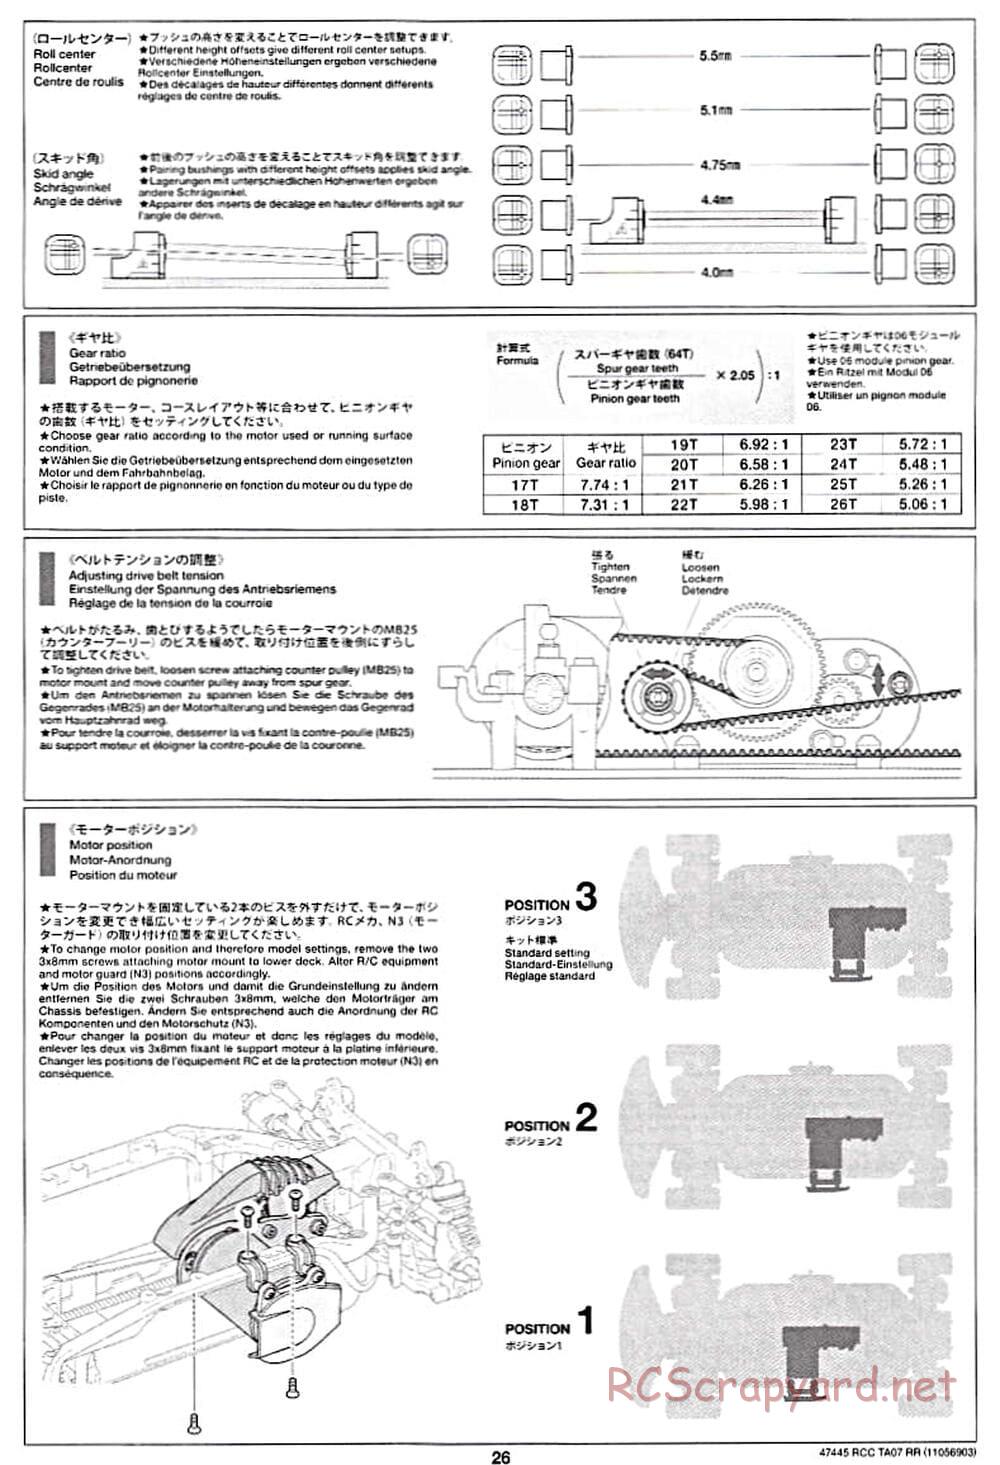 Tamiya - TA07 RR Chassis - Manual - Page 26